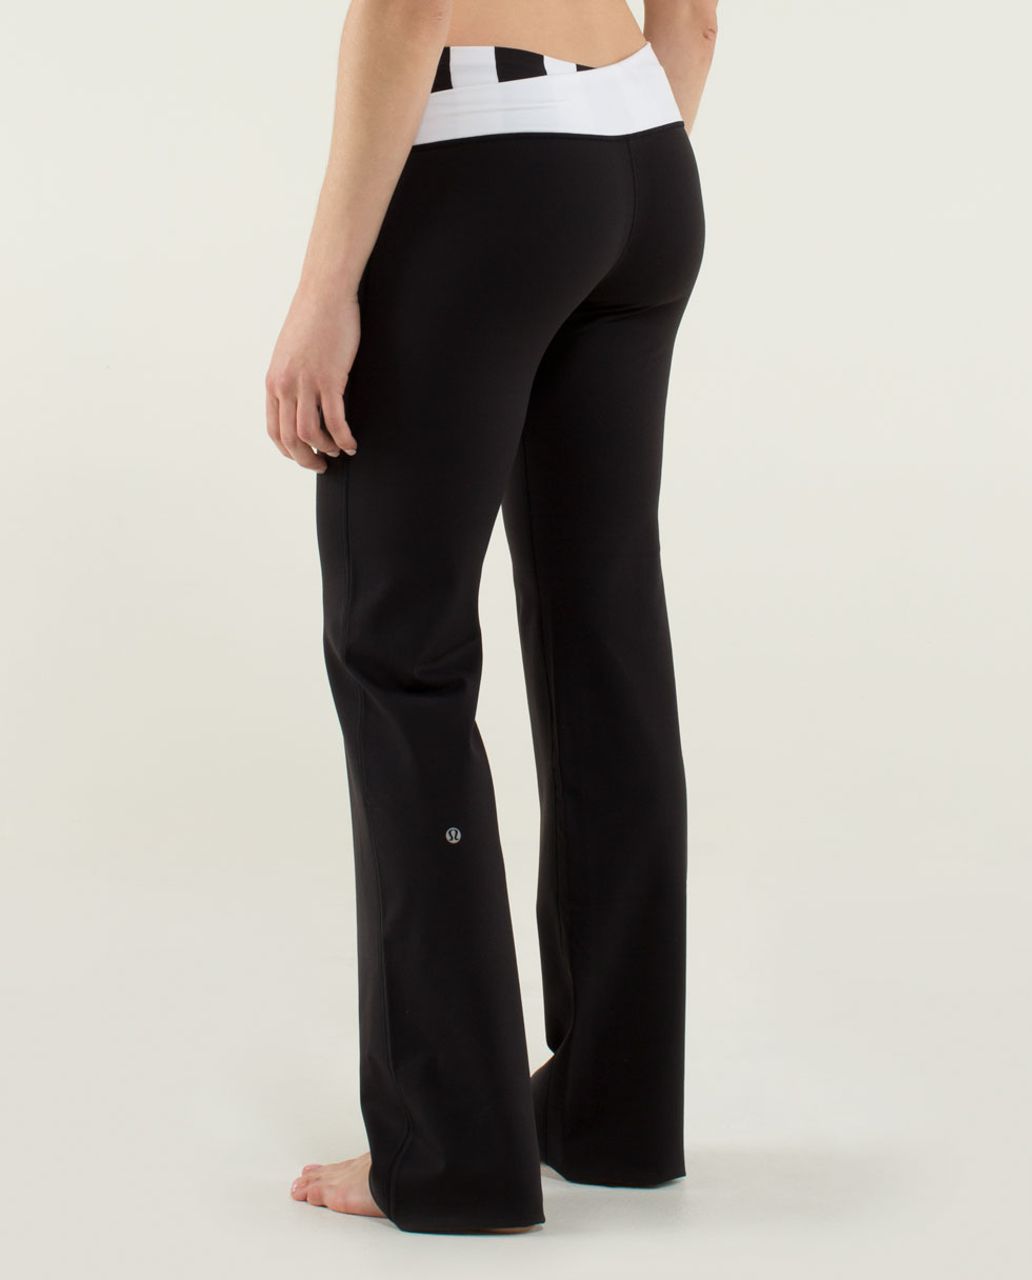 Lululemon Astro Pant (Tall) *Full-On Luon - Black / Straightup Stripe Black White / Parallel Stripe Blackwhite